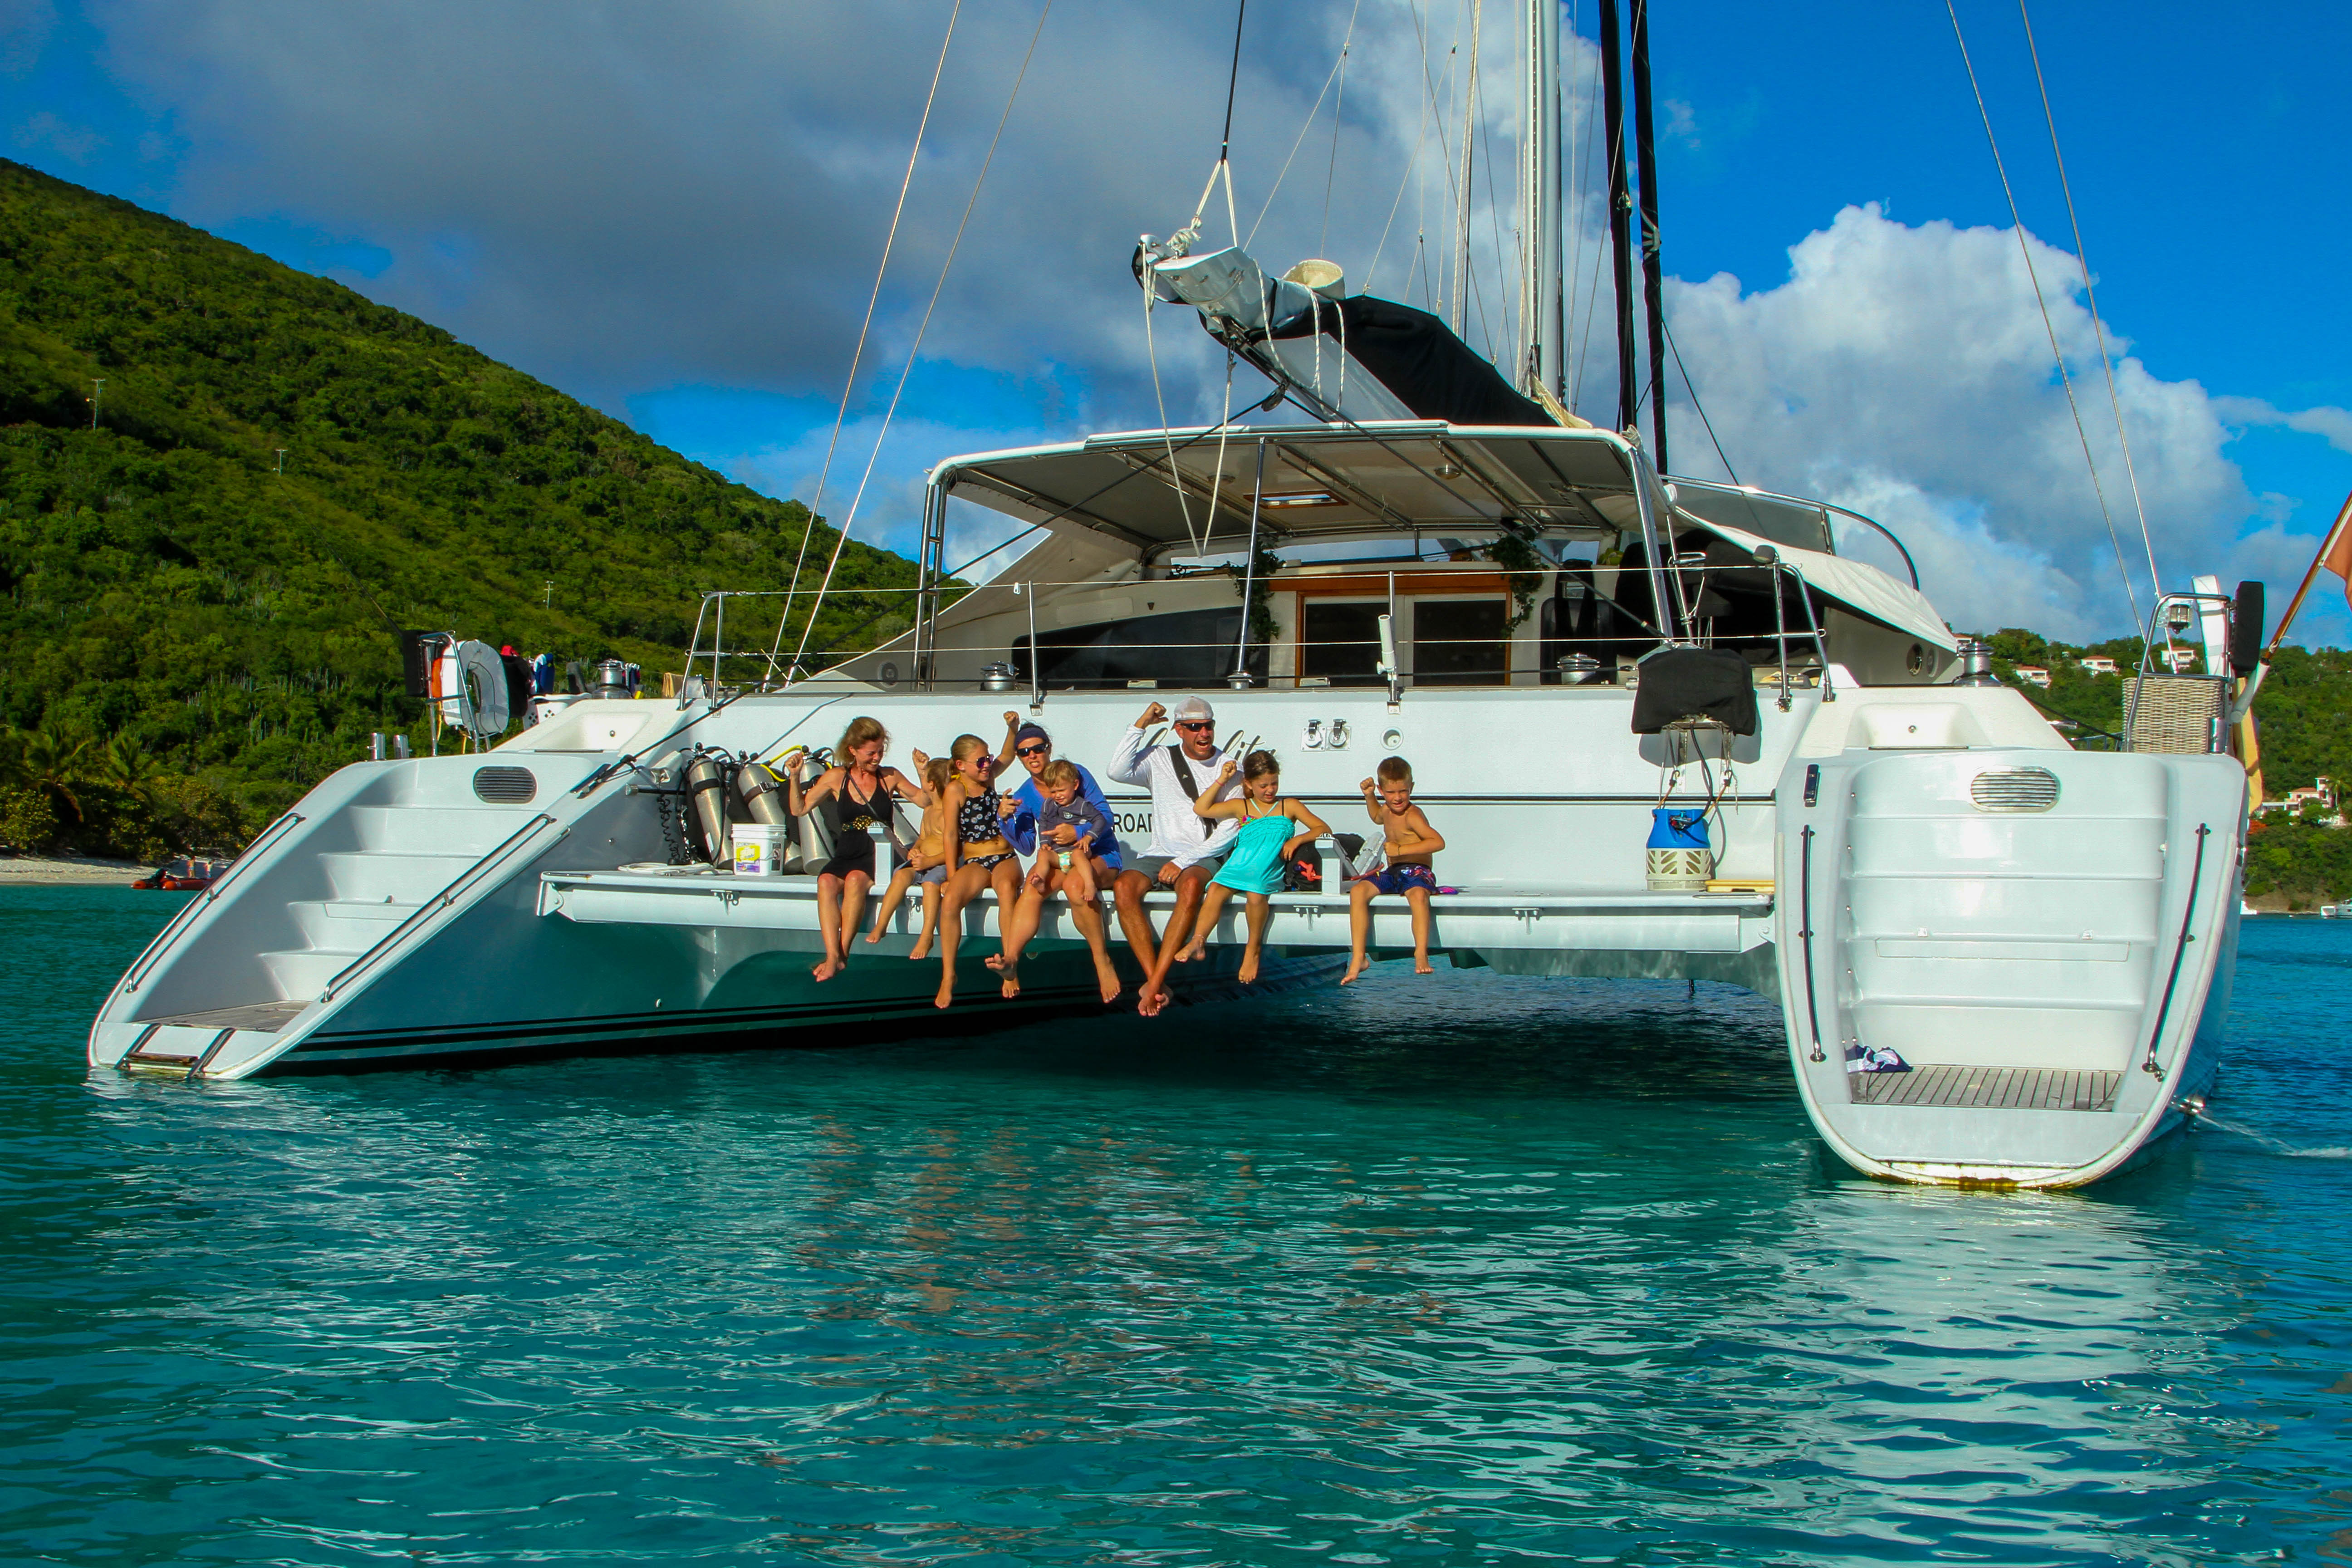 sailboat rental caribbean